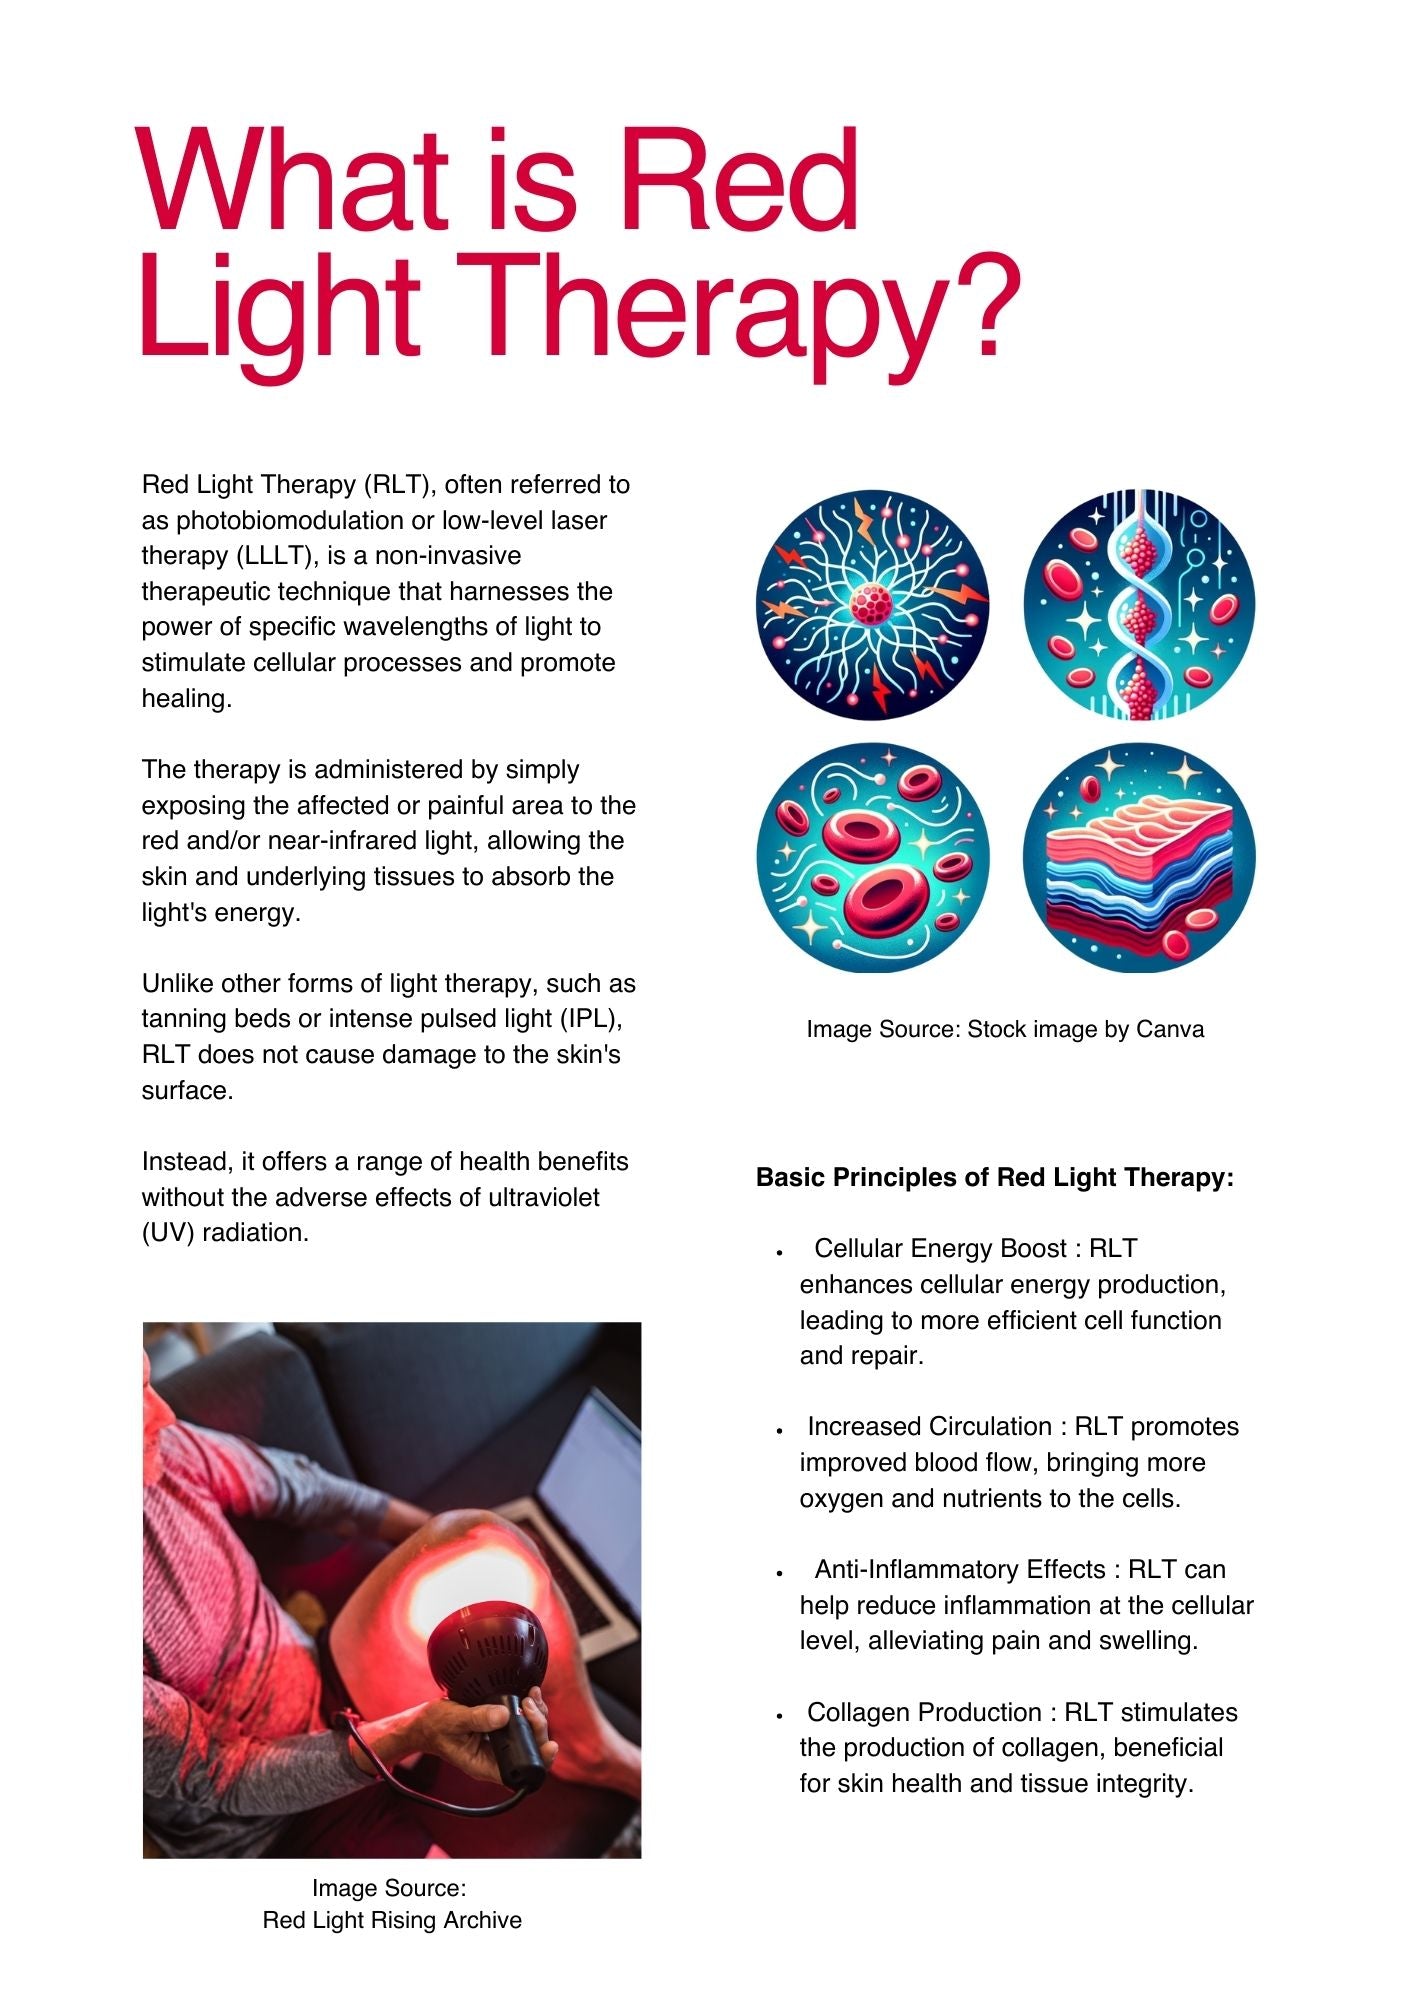 Libro electrónico: una guía para la terapia con luz roja y el dolor